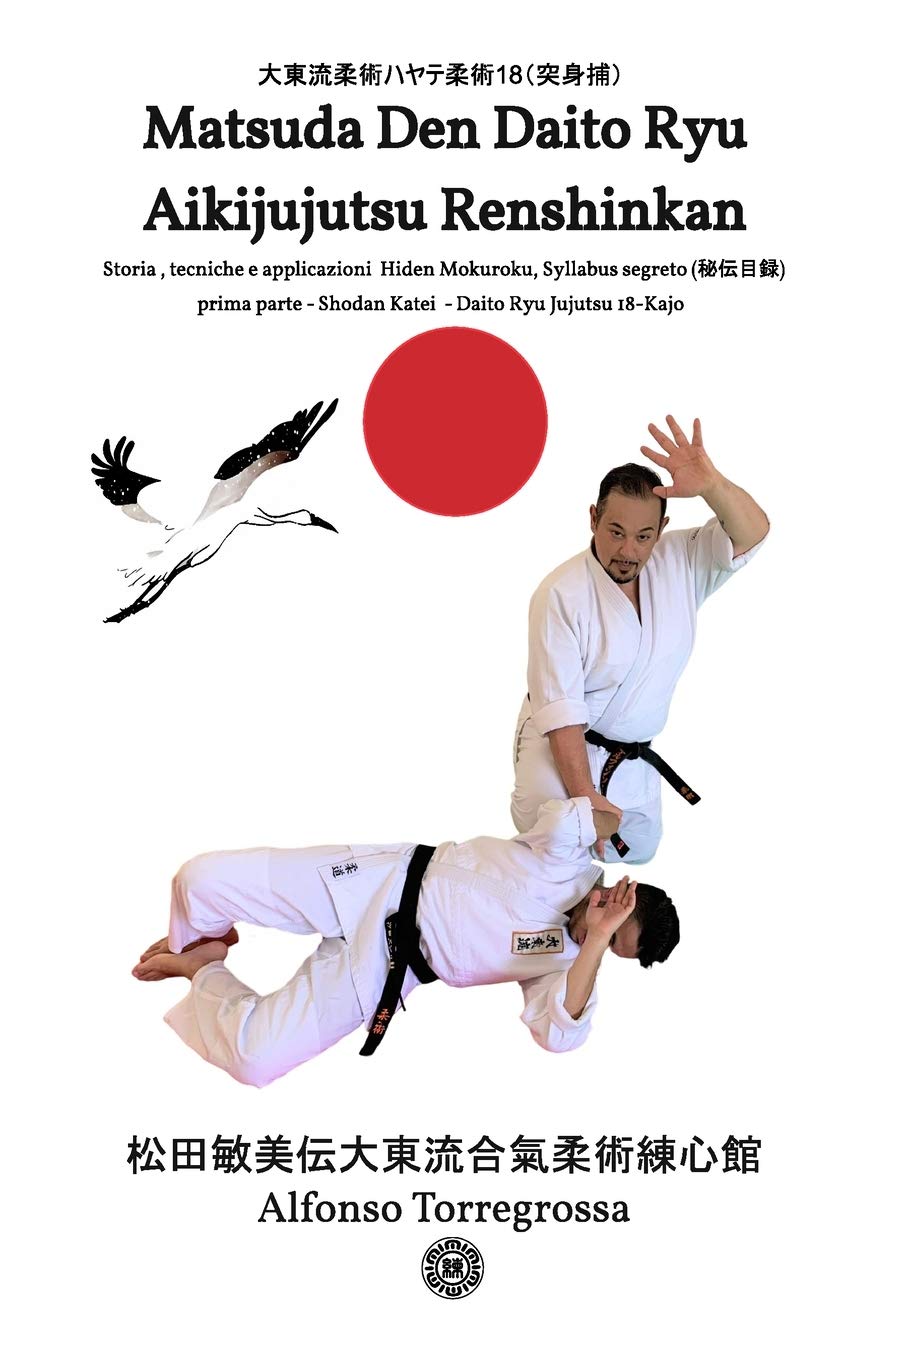 Daito Ryu Aikijujutsu Renshinkan Book 1 by Alfonso Torregrossa (Italian)